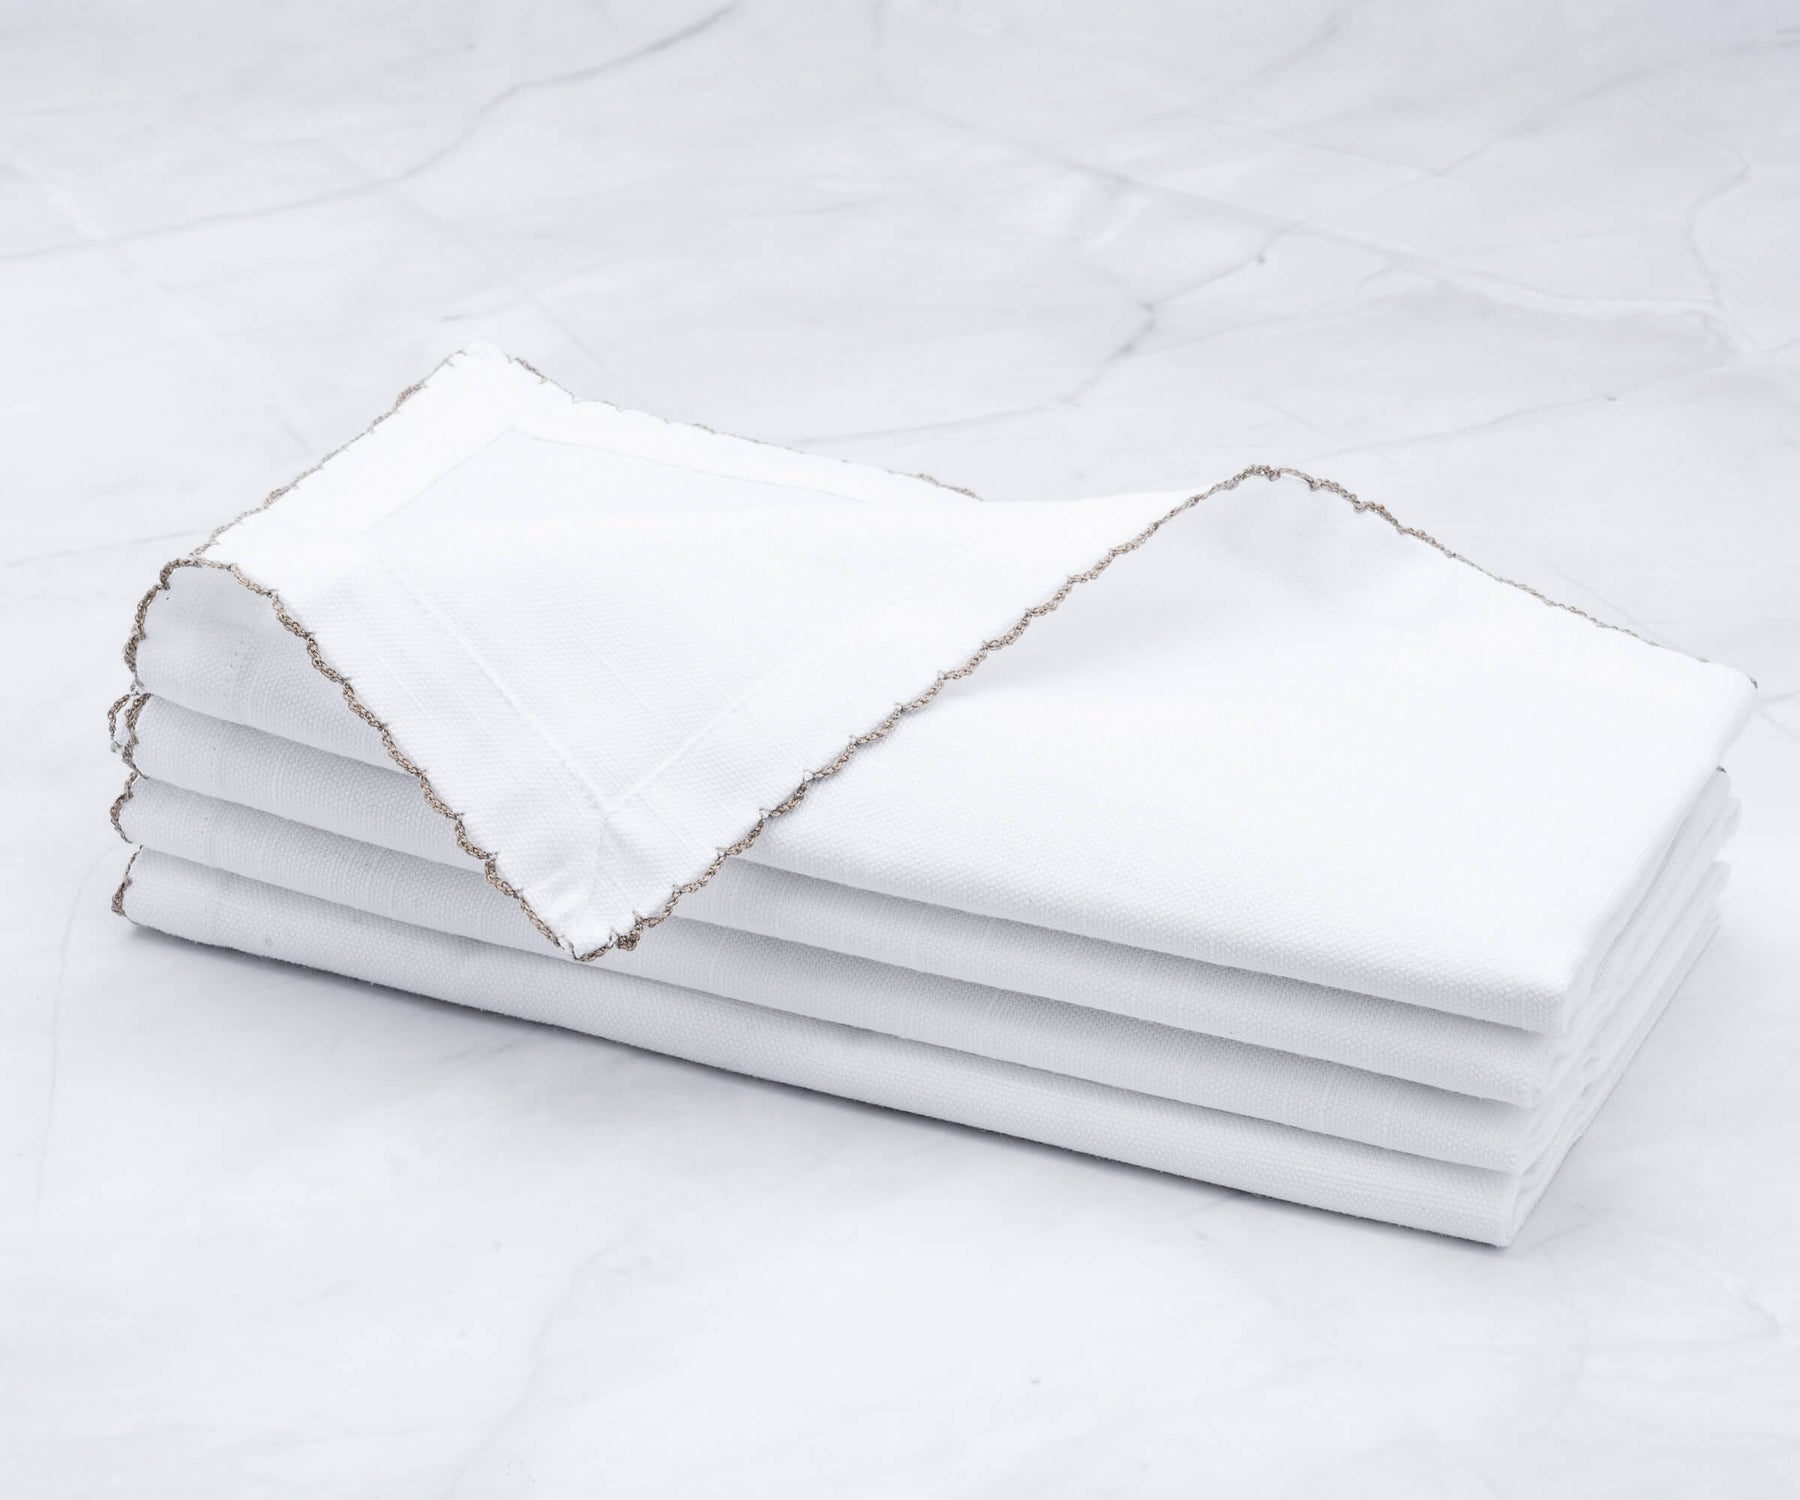 Quartet of shell edge napkins elegantly folded on marble